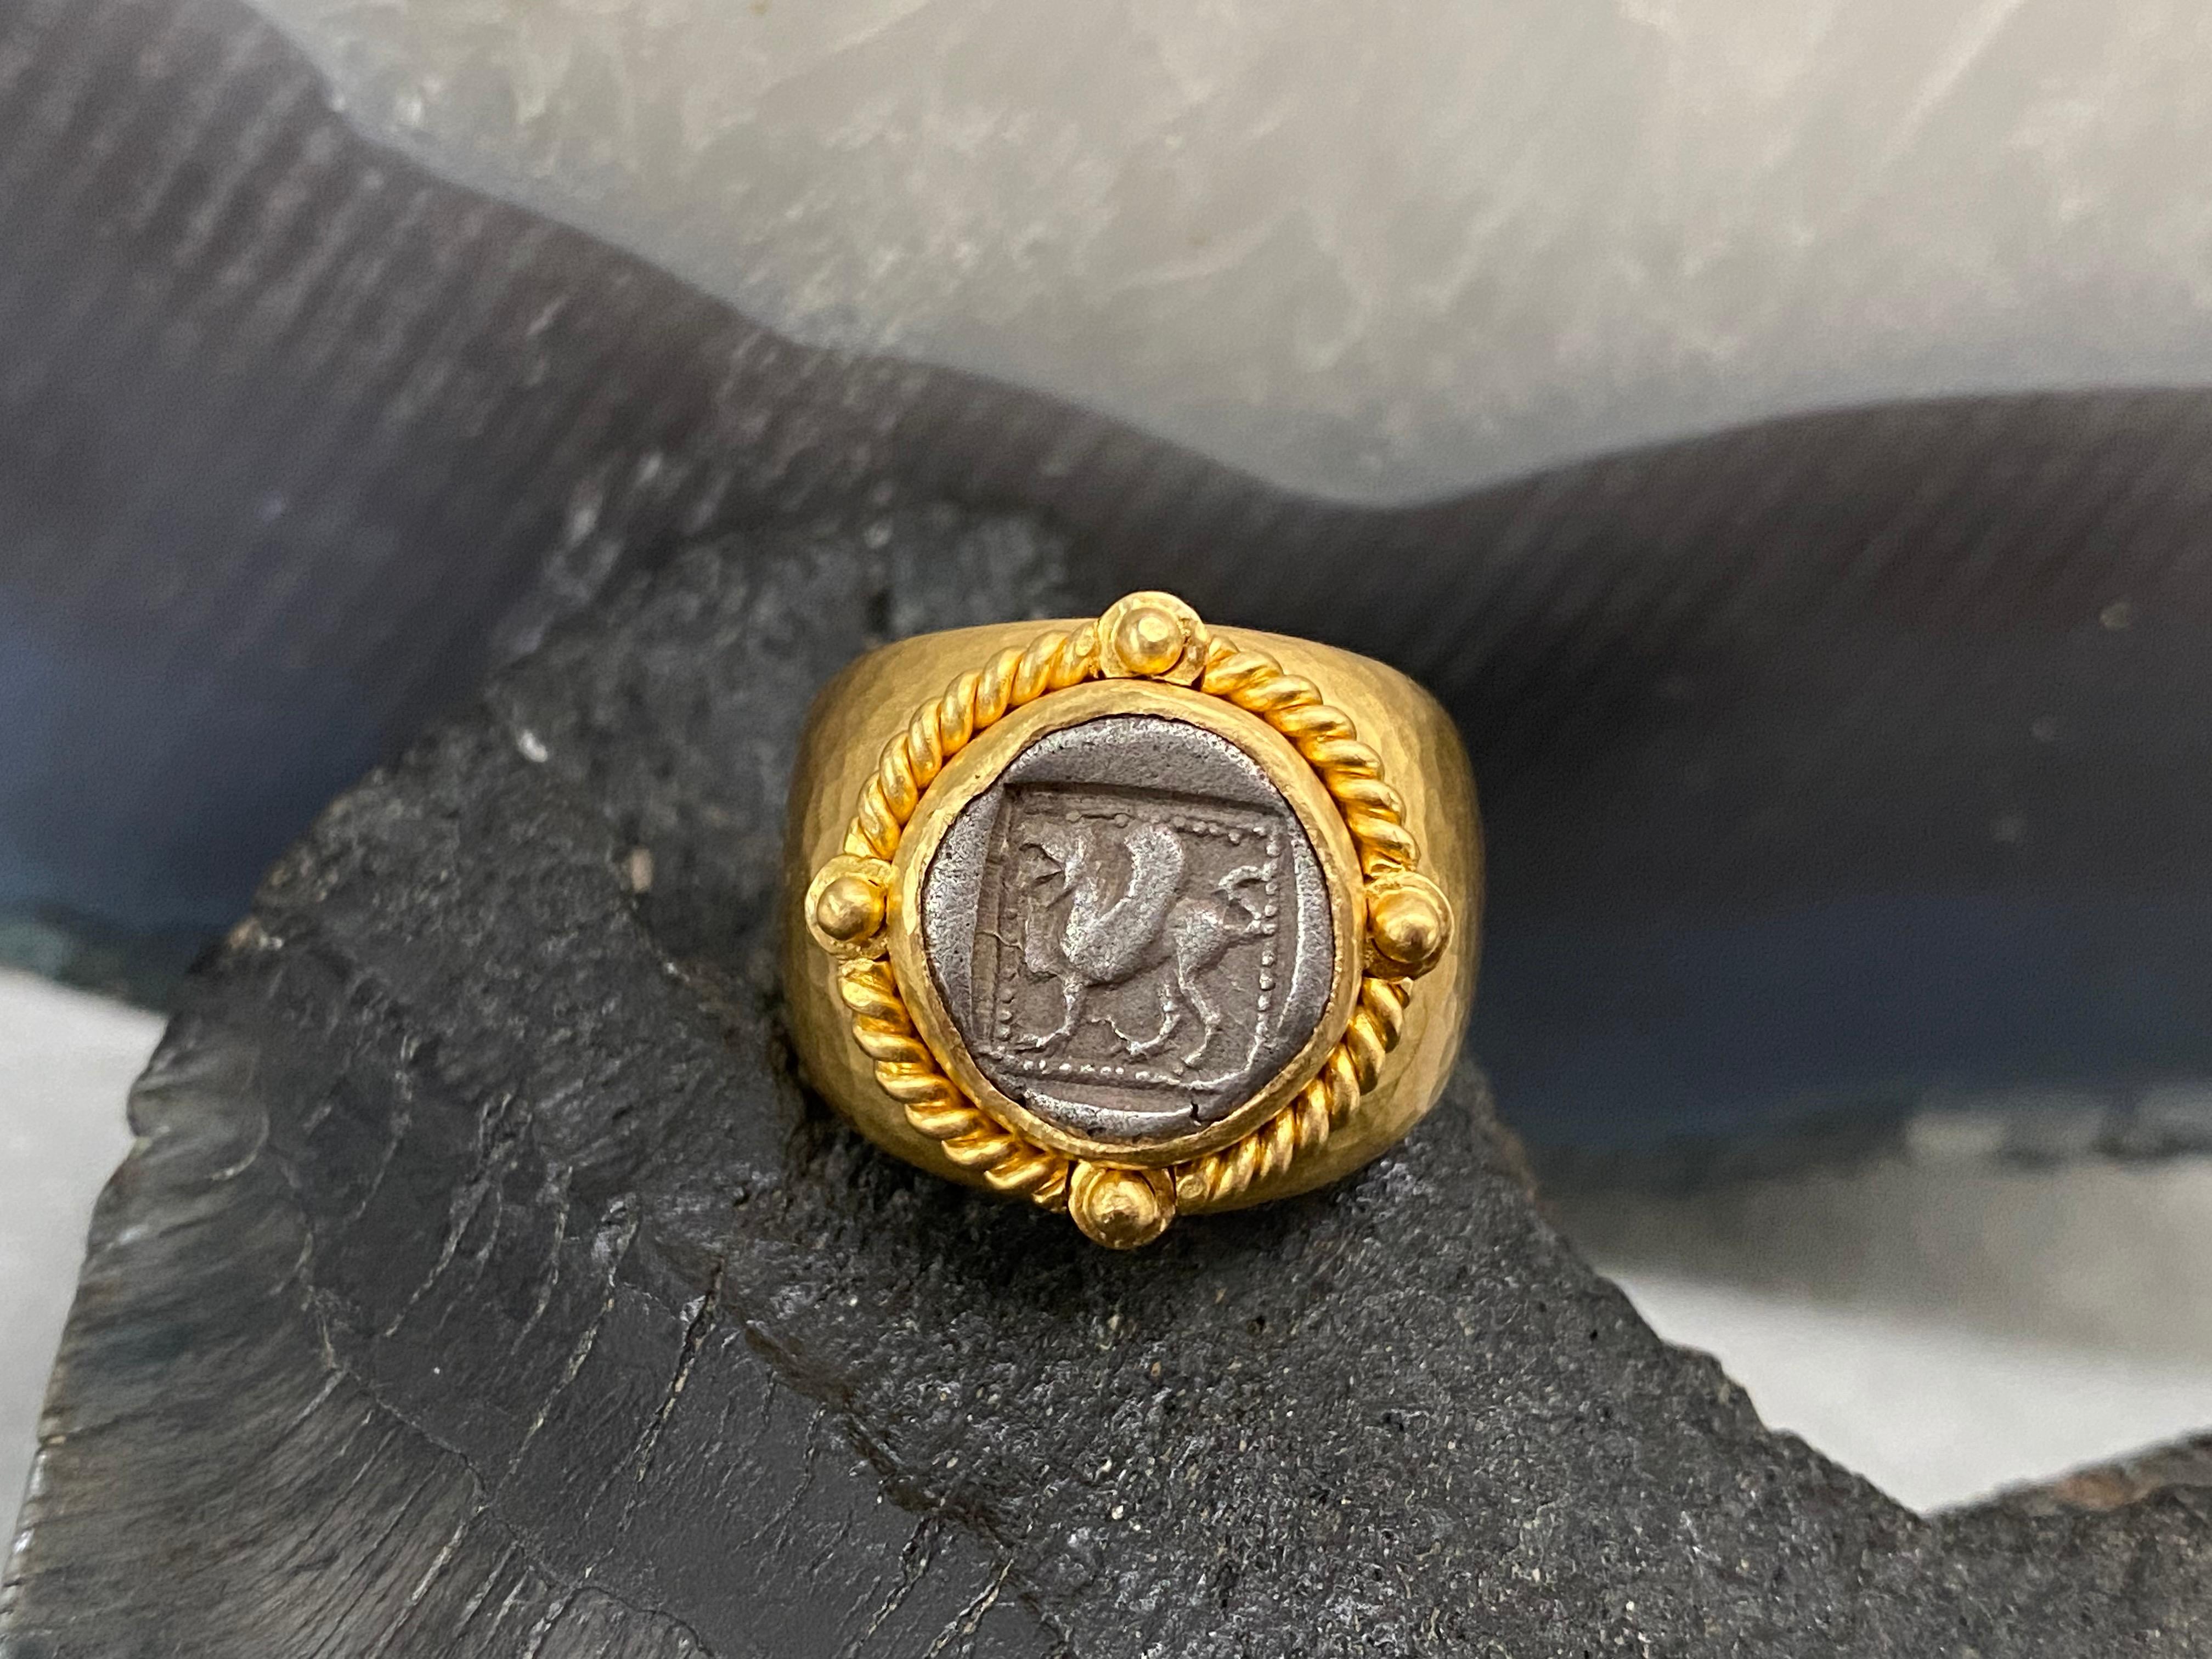 Eine einzigartige, authentische, antike griechische Silbermünze, die einen Greif zeigt, ist in ein von der Antike inspiriertes, gehämmertes Steven Battelle-Design aus reichem 22-karätigem Gold eingefasst. Die Münze ist von einer schweren